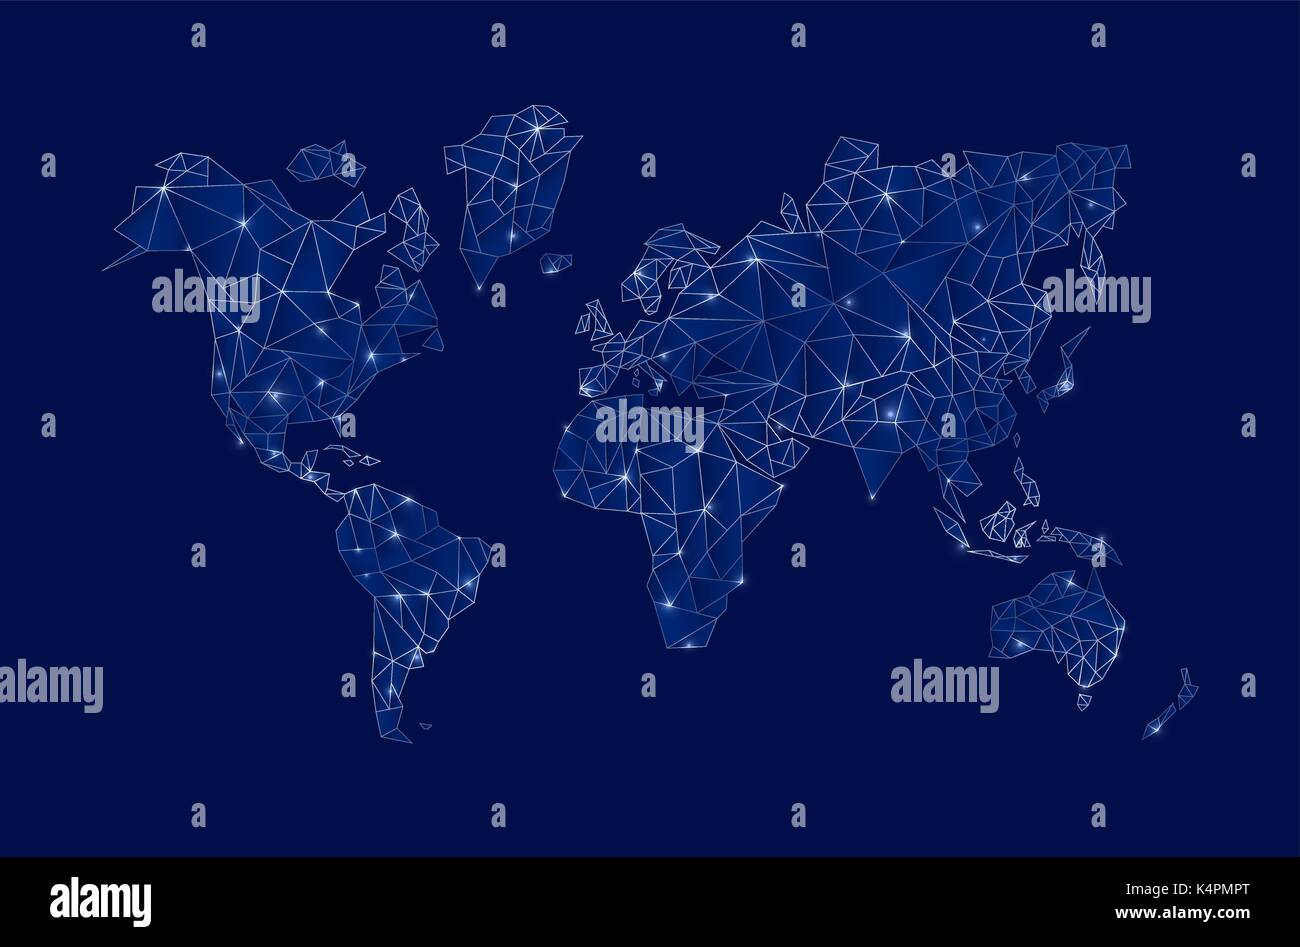 Moderne, in Blau digitale Landkarte Konzept Abbildung mit futuristischen Elementen ideal für Wirtschaft, Wissenschaft oder Internet Projekt. EPS 10 Vektor. Stock Vektor